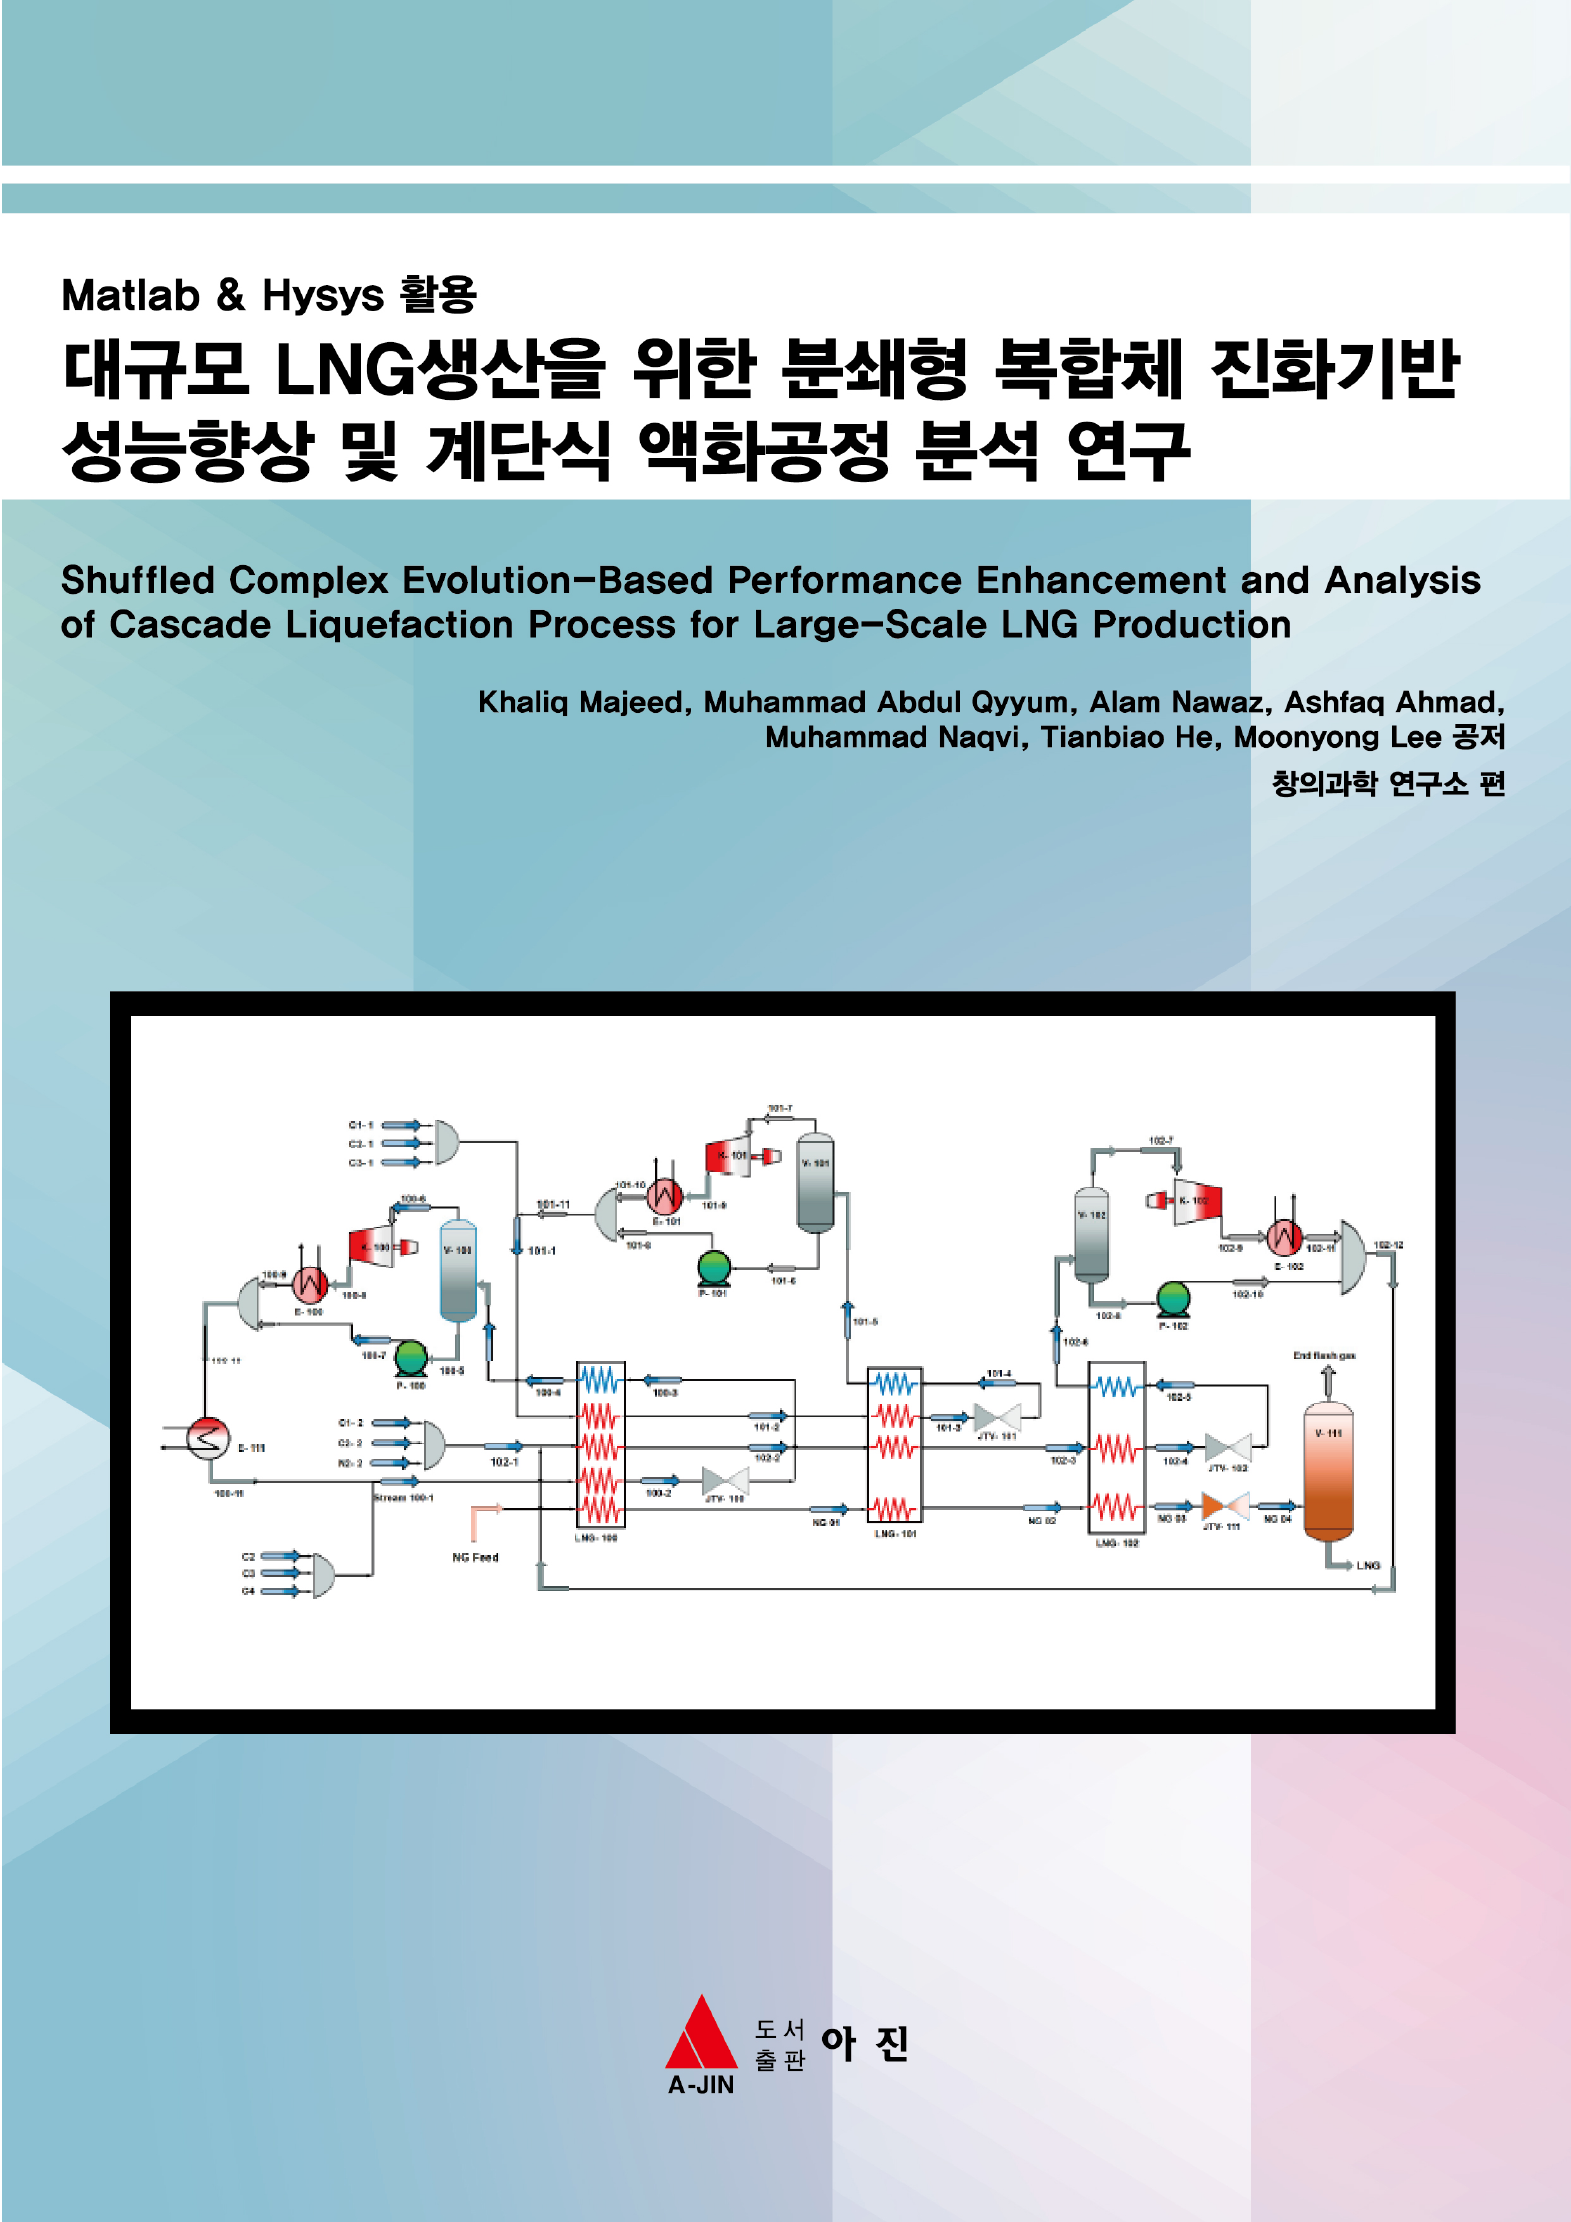 대규모 LNG생산을 위한 분쇄형 복합체 진화기반 성능향상 및 계단식 액화공정 분석 연구